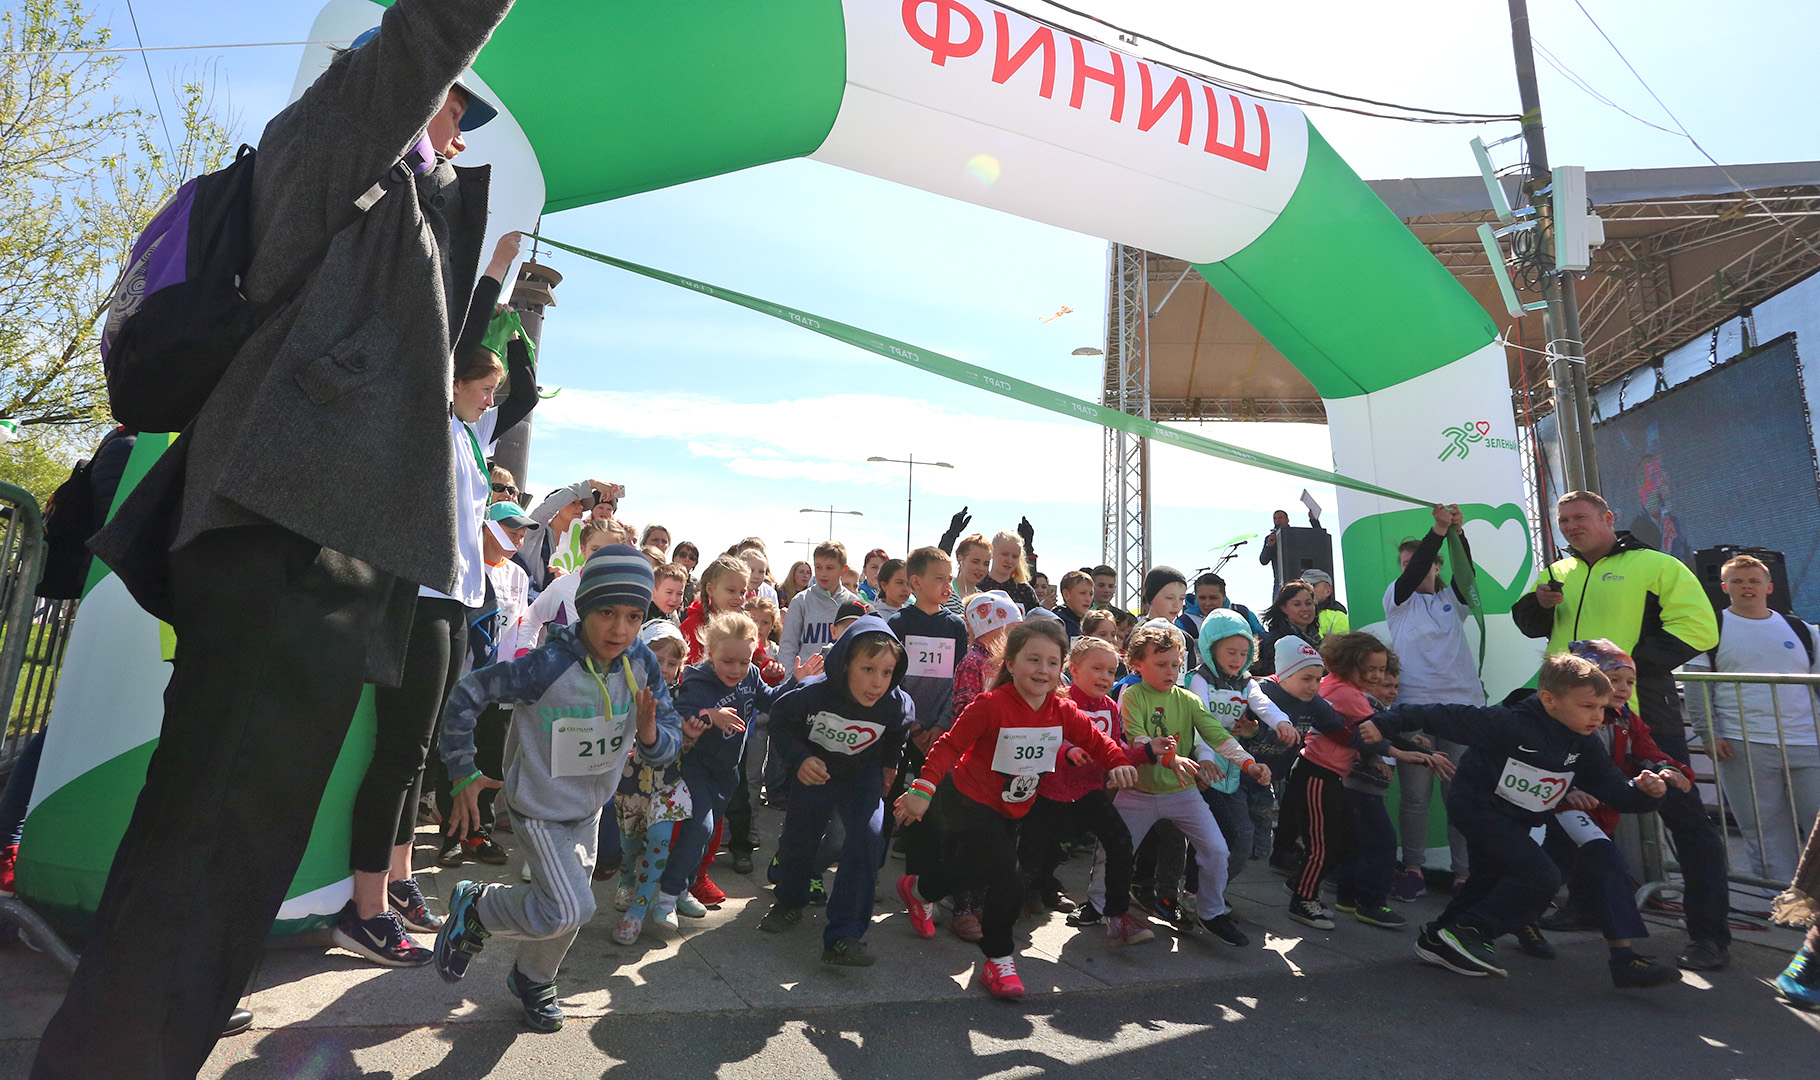 Зеленый марафон для малышей - дистанции 420 метров и 42 метра